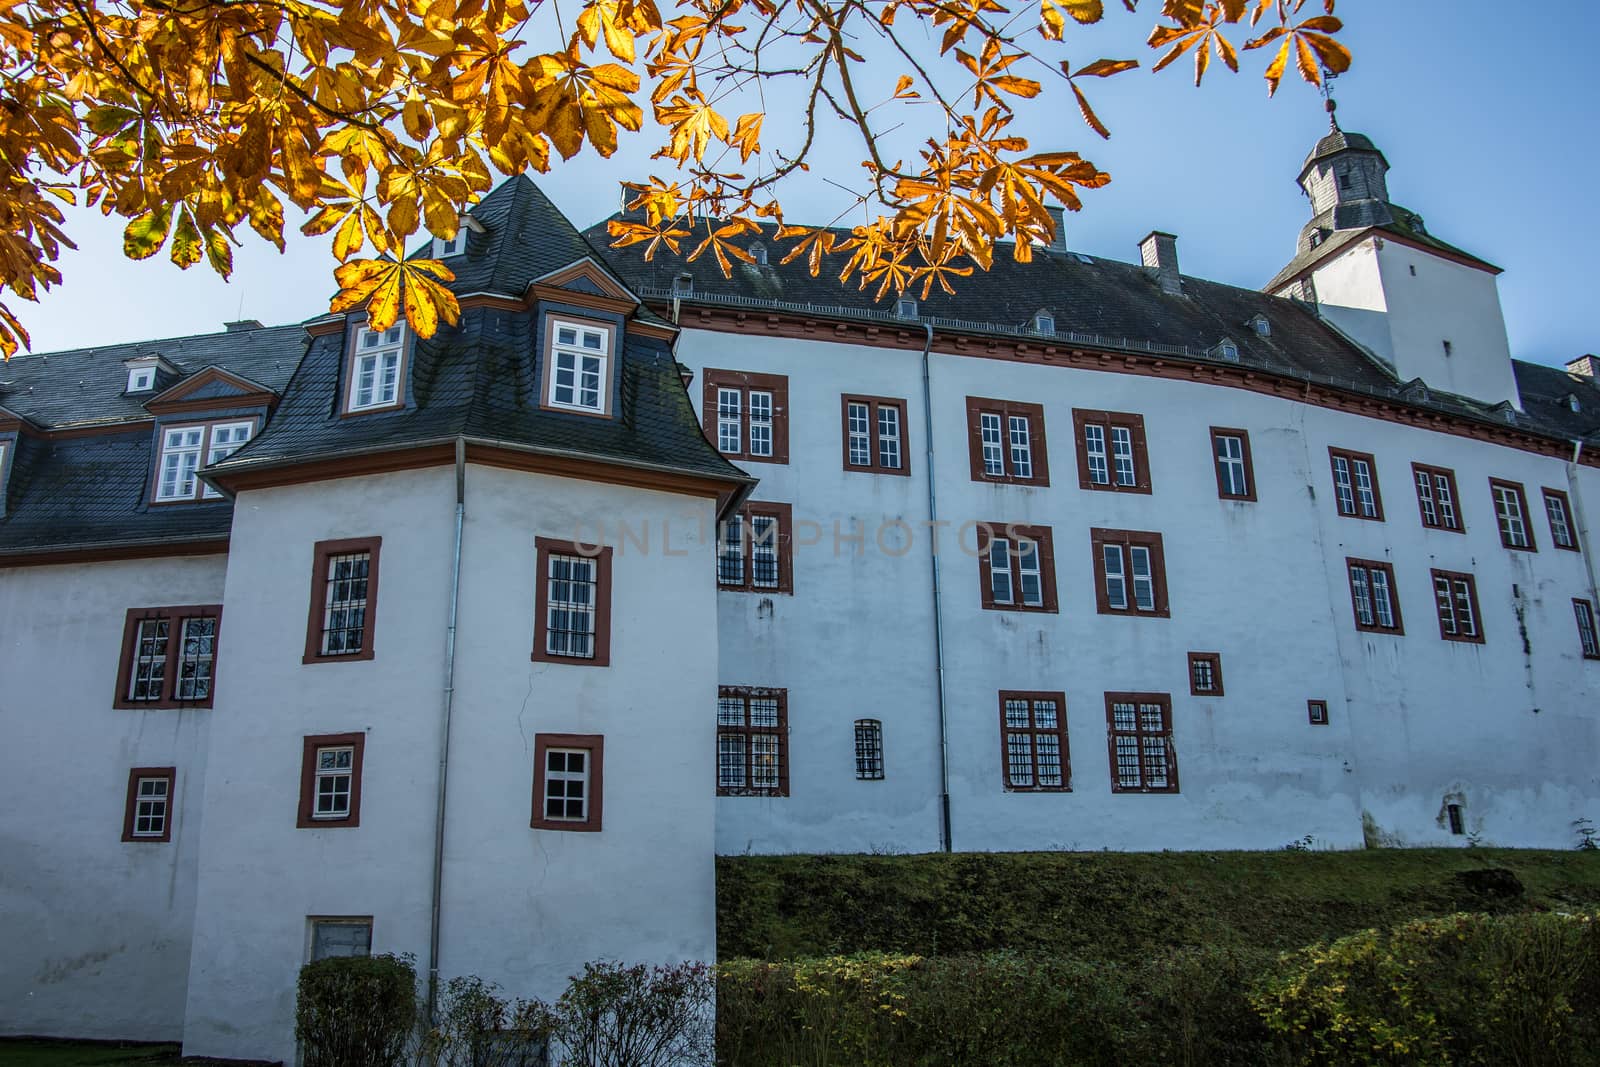 Siegen-Wittgenstein Castle in Bad Berleburg by Dr-Lange